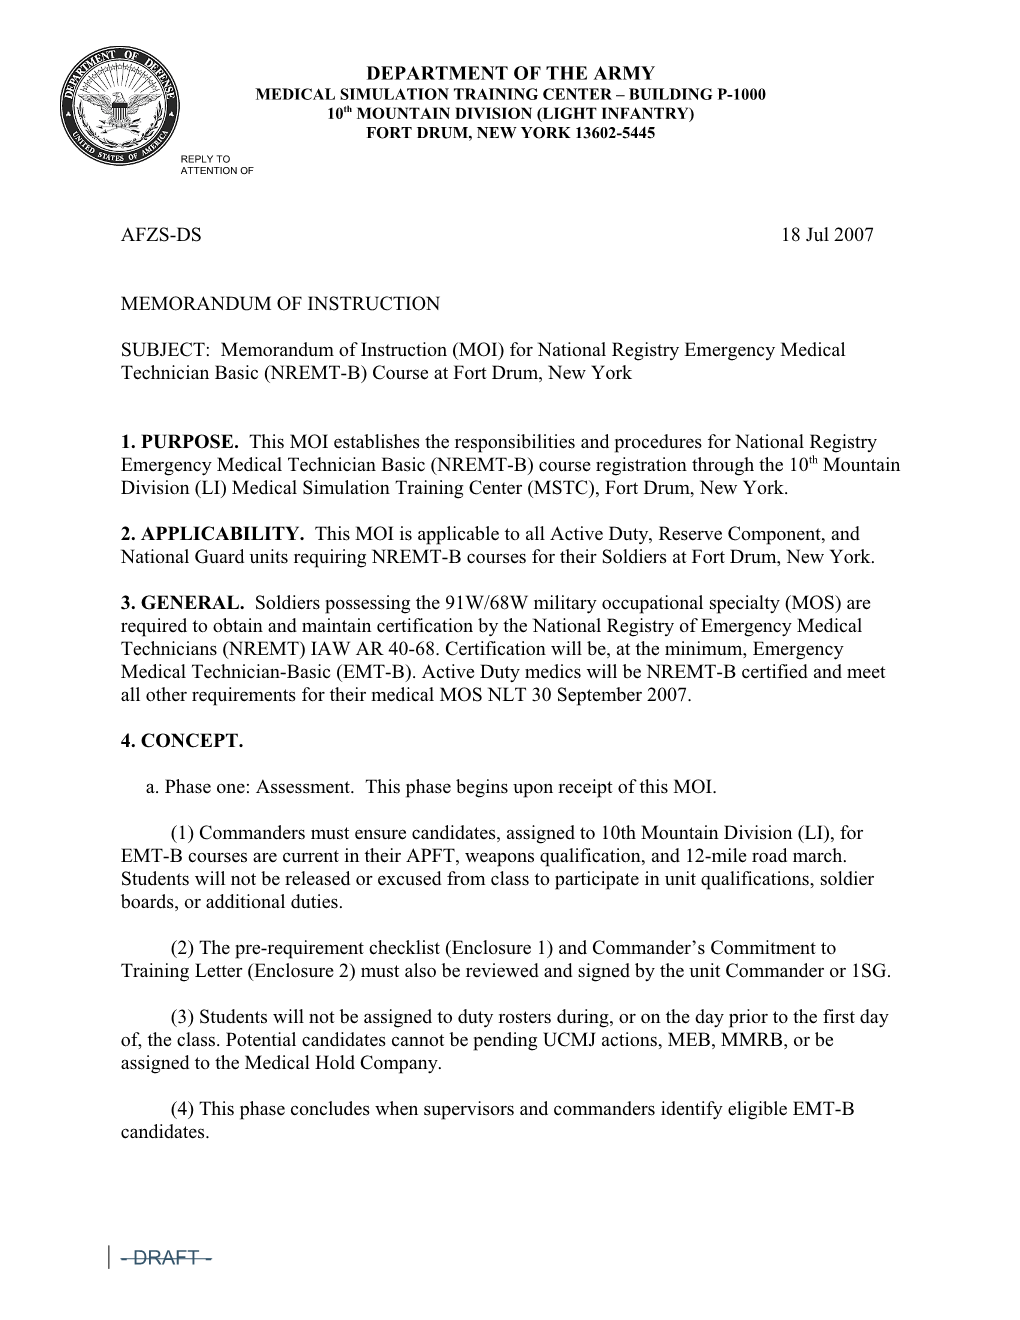 SUBJECT: Memorandum of Instruction (MOI) for National Registry Emergency Medical Technician